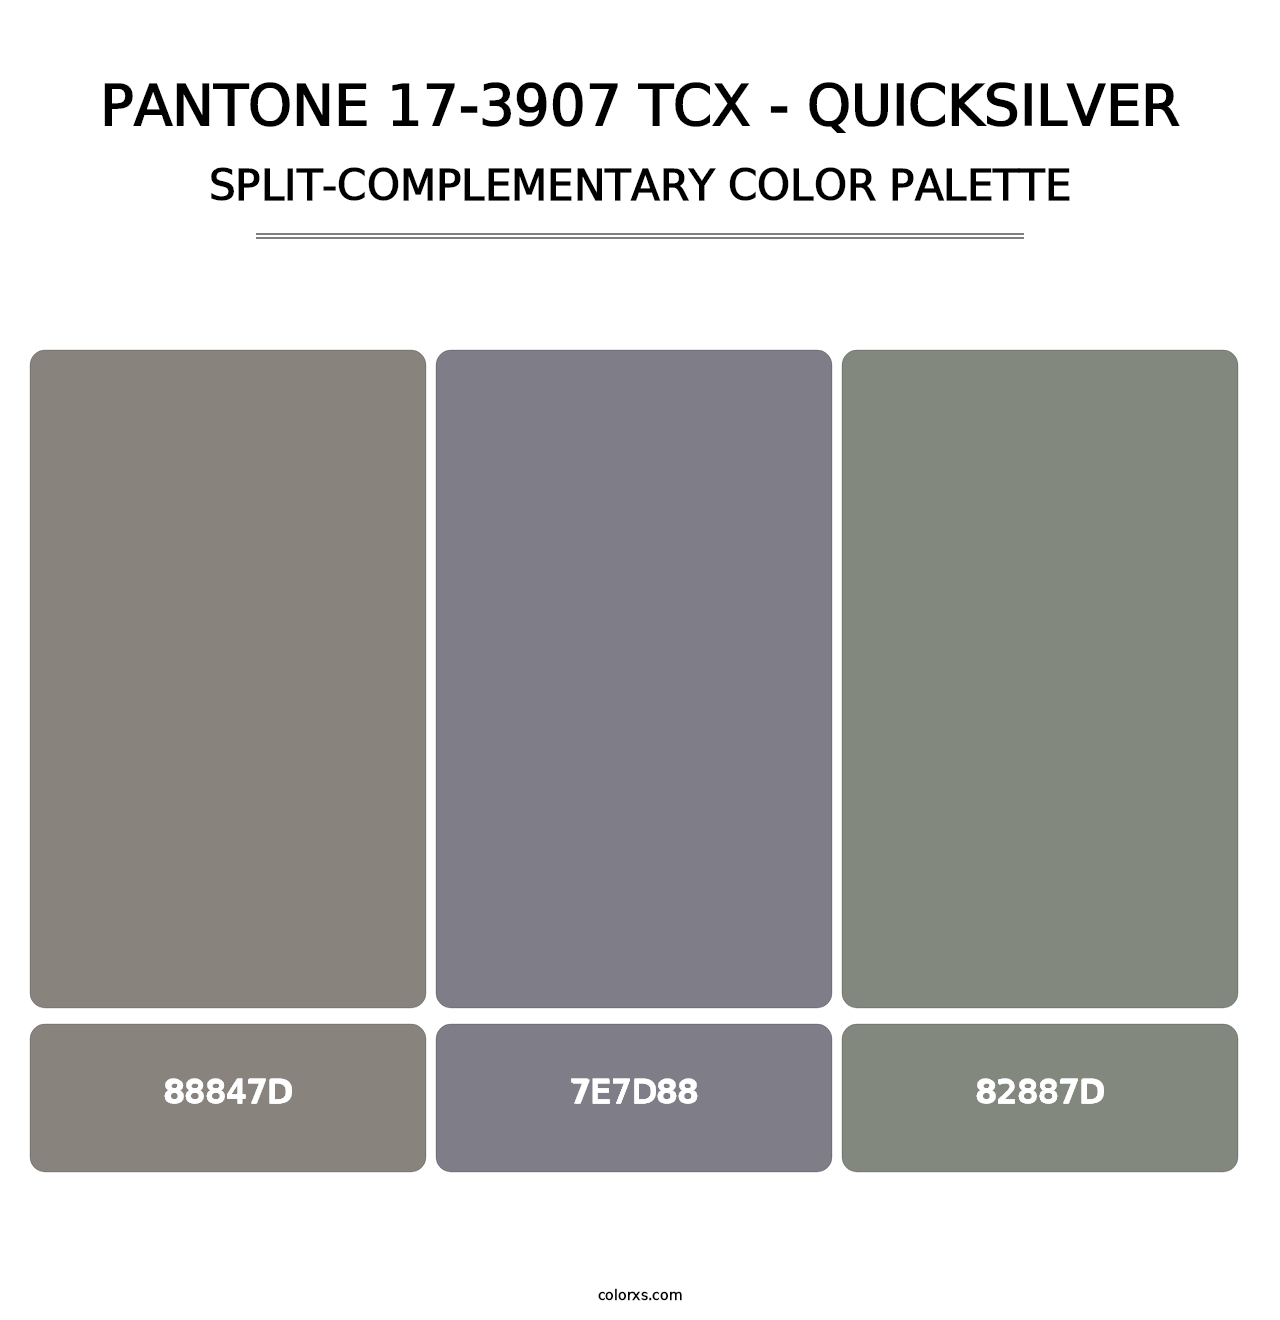 PANTONE 17-3907 TCX - Quicksilver - Split-Complementary Color Palette